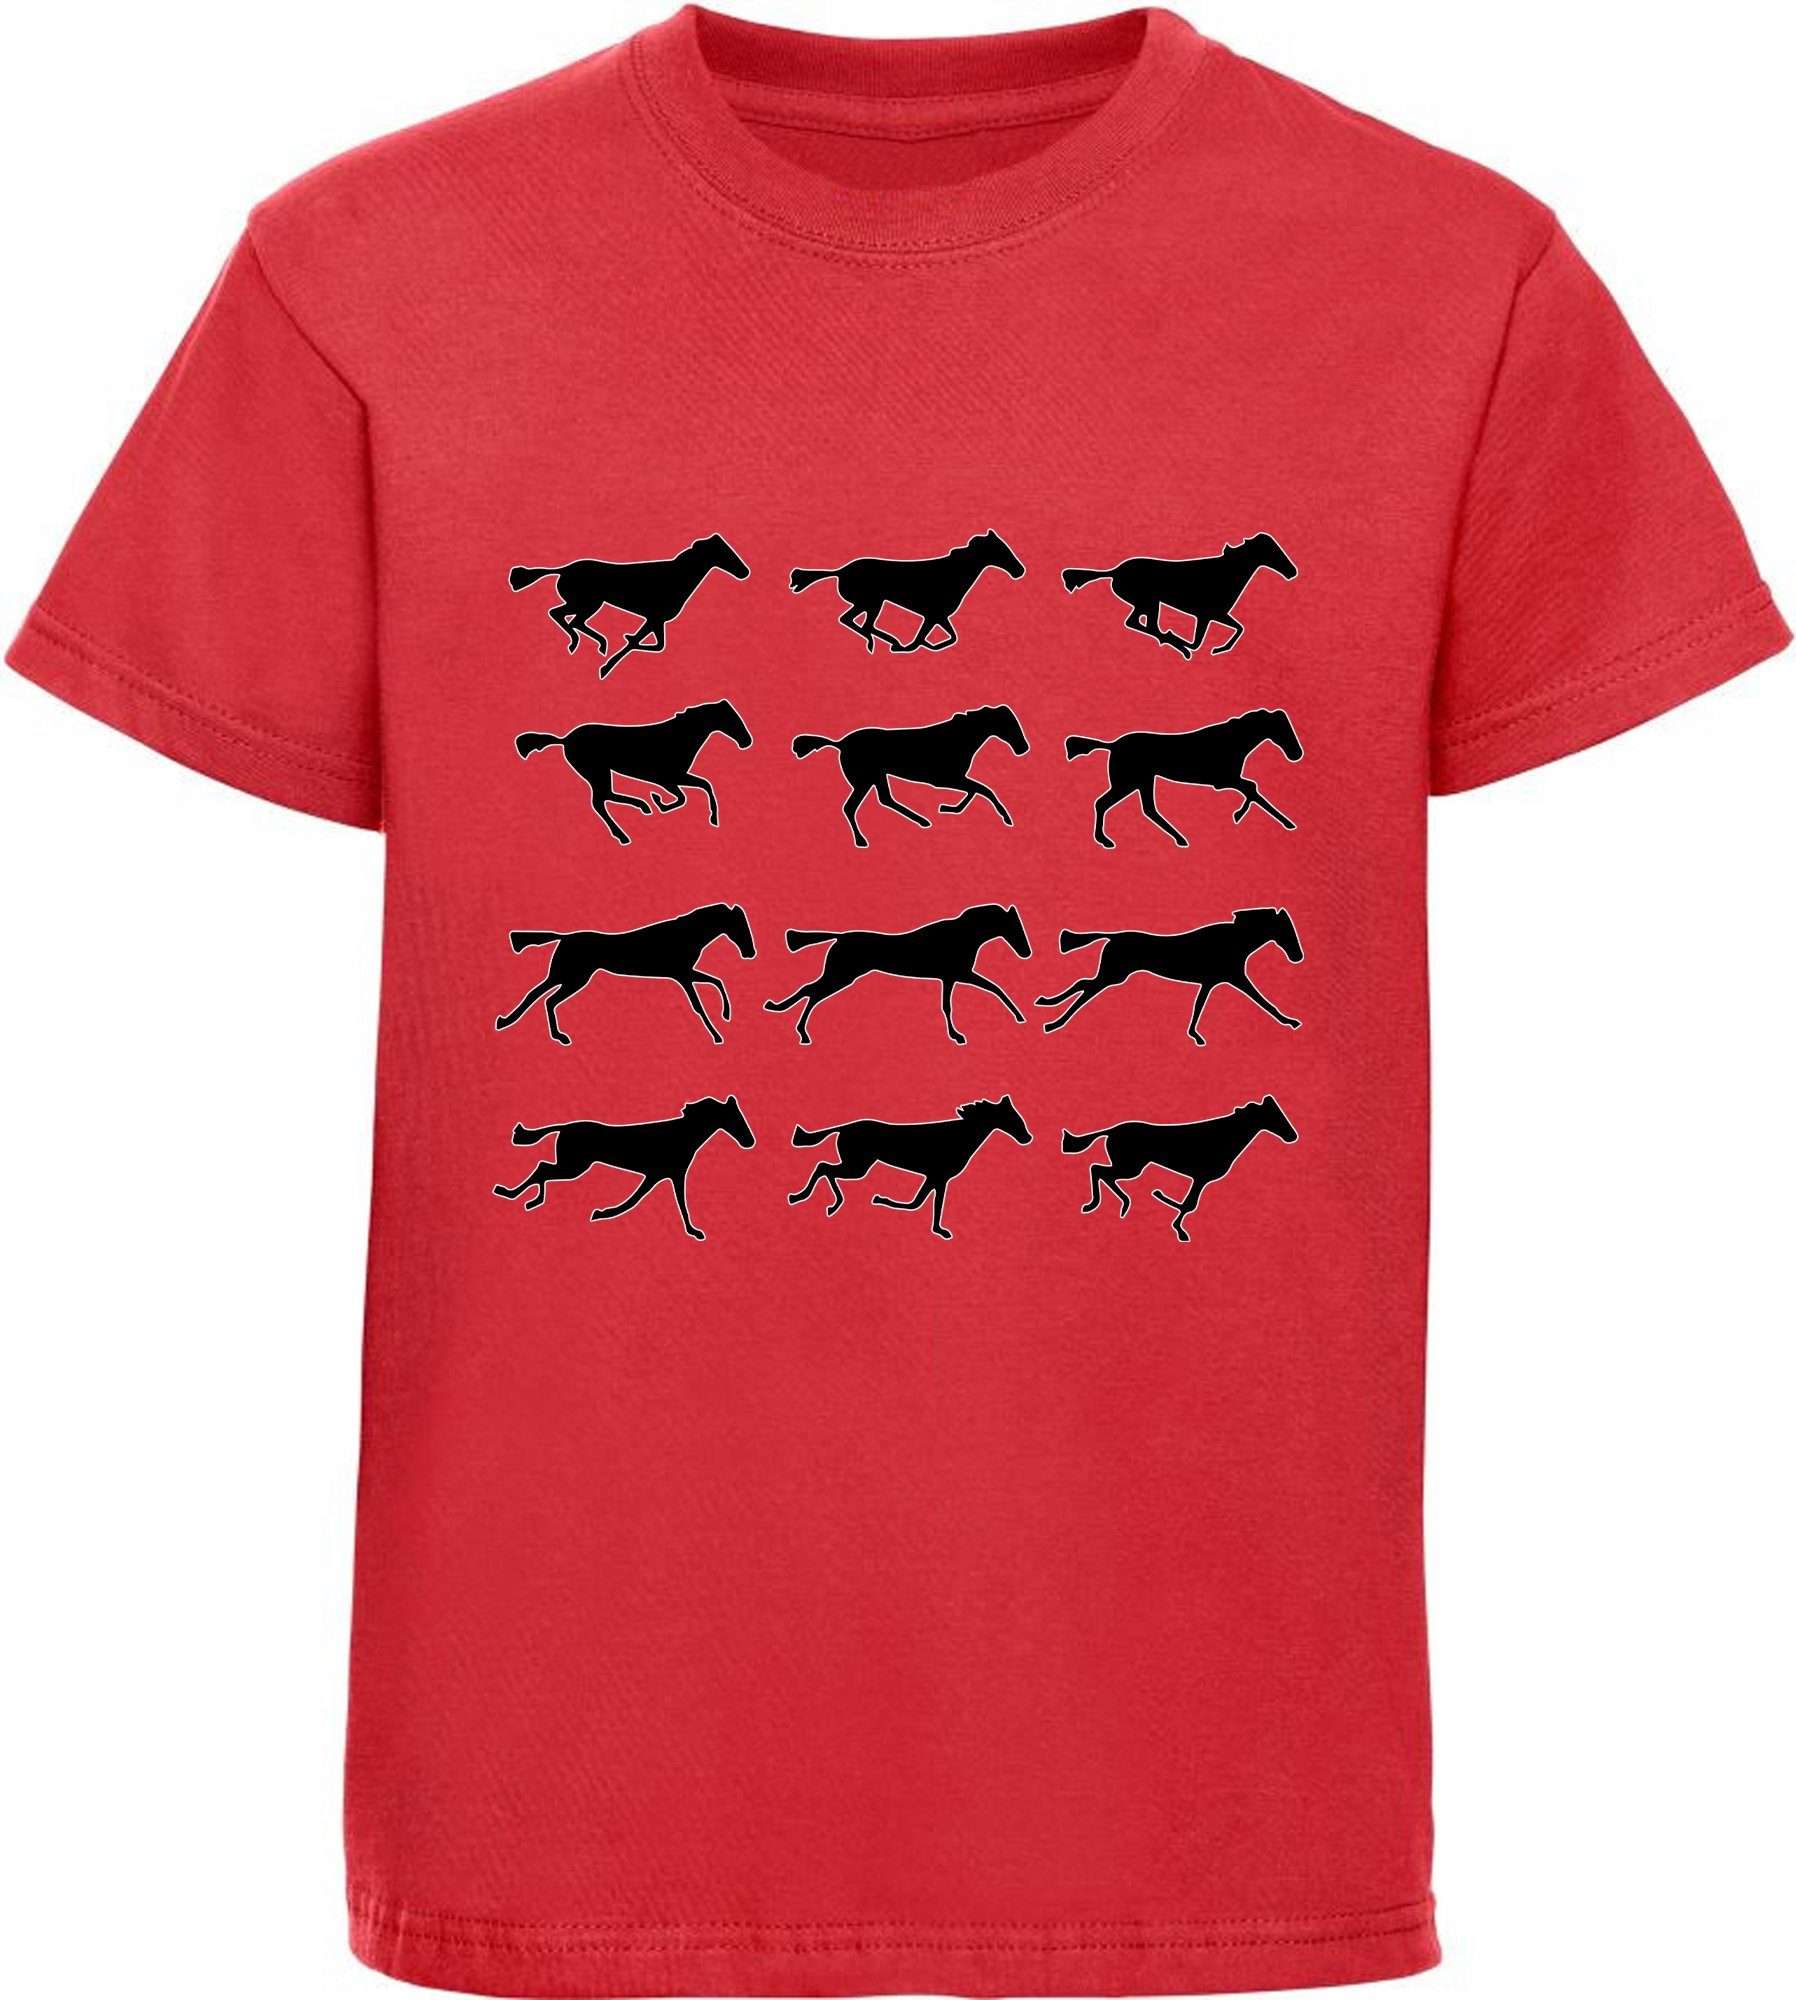 MyDesign24 Print-Shirt bedrucktes Mädchen - rot Aufdruck, Baumwollshirt Silhouetten T-Shirt i173 von mit Pferden